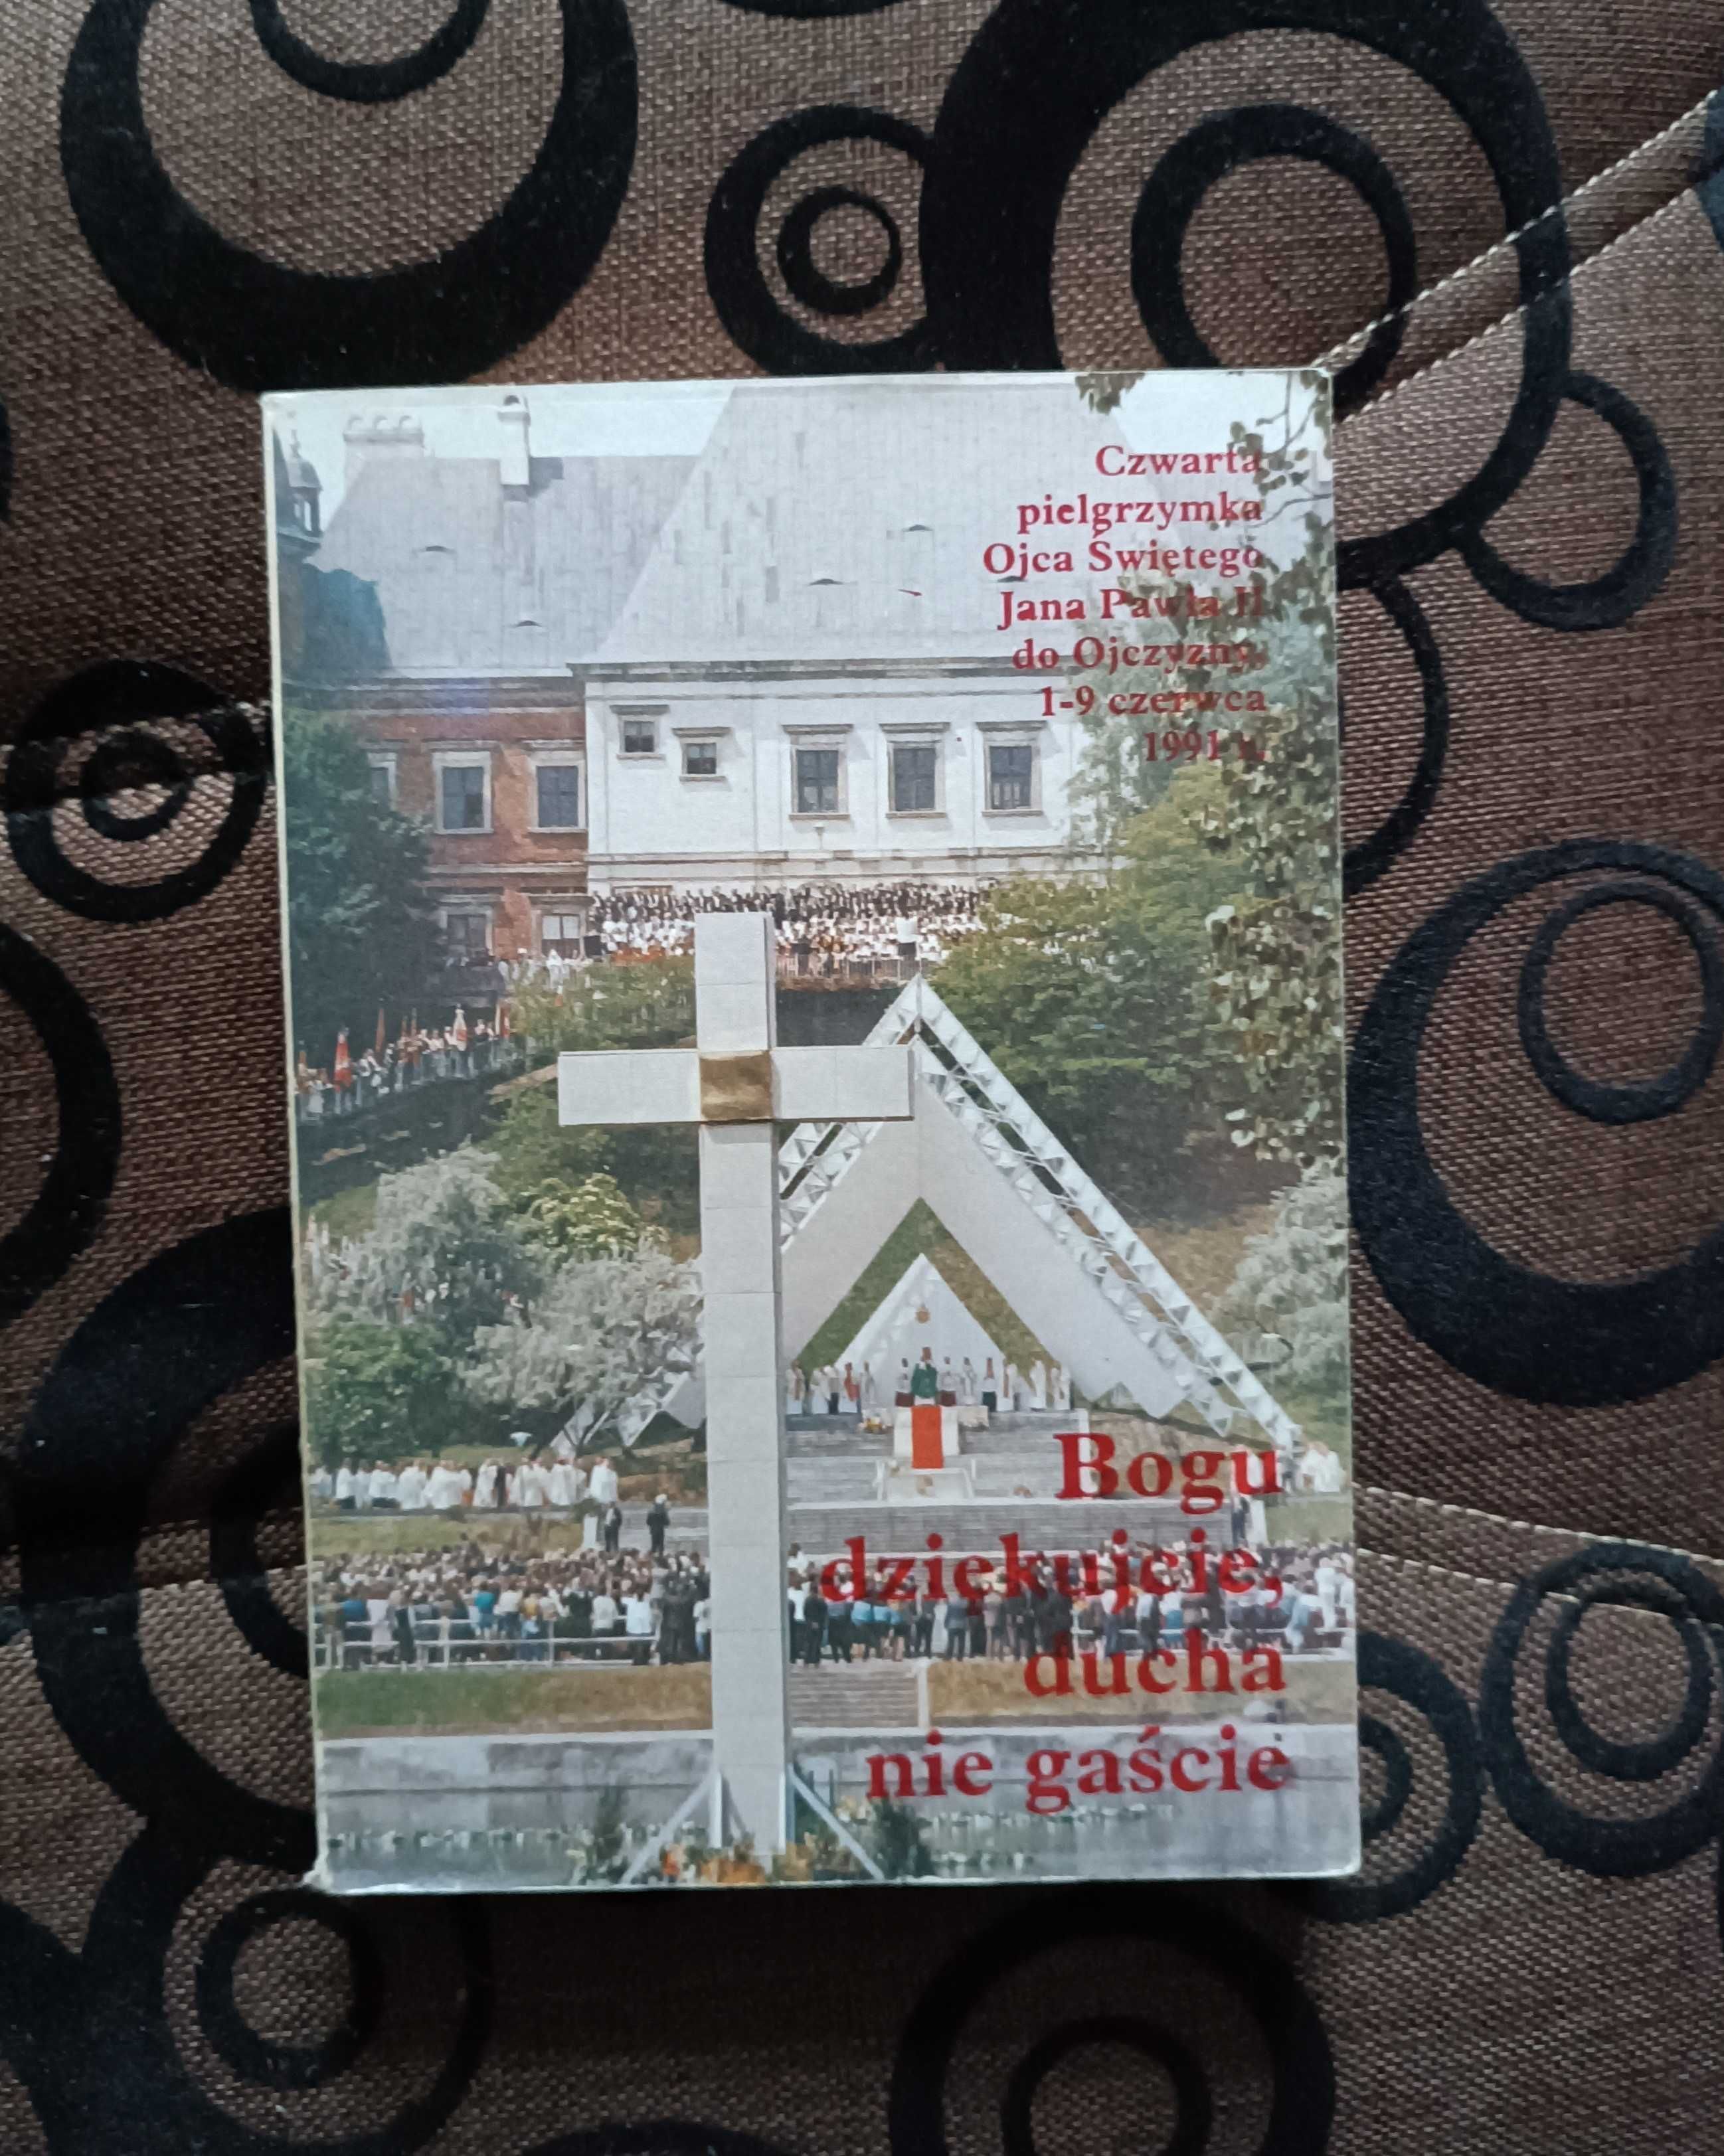 Czwarta pielgrzymka Ojca Świętego Jana Pawła II w Polsce